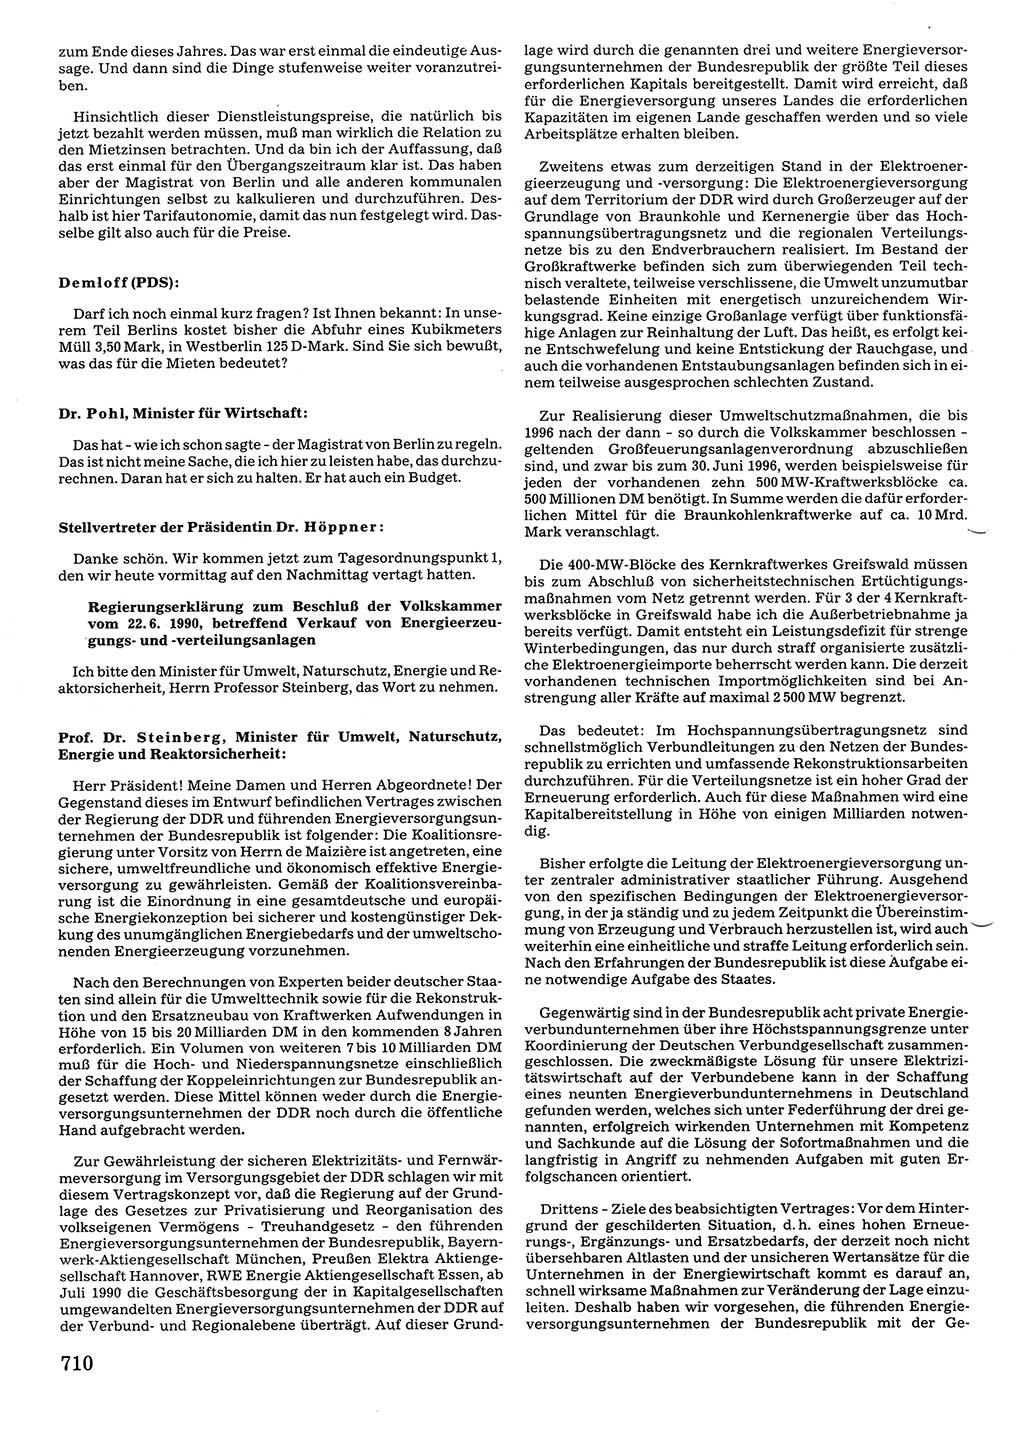 Tagungen der Volkskammer (VK) der Deutschen Demokratischen Republik (DDR), 10. Wahlperiode 1990, Seite 710 (VK. DDR 10. WP. 1990, Prot. Tg. 1-38, 5.4.-2.10.1990, S. 710)